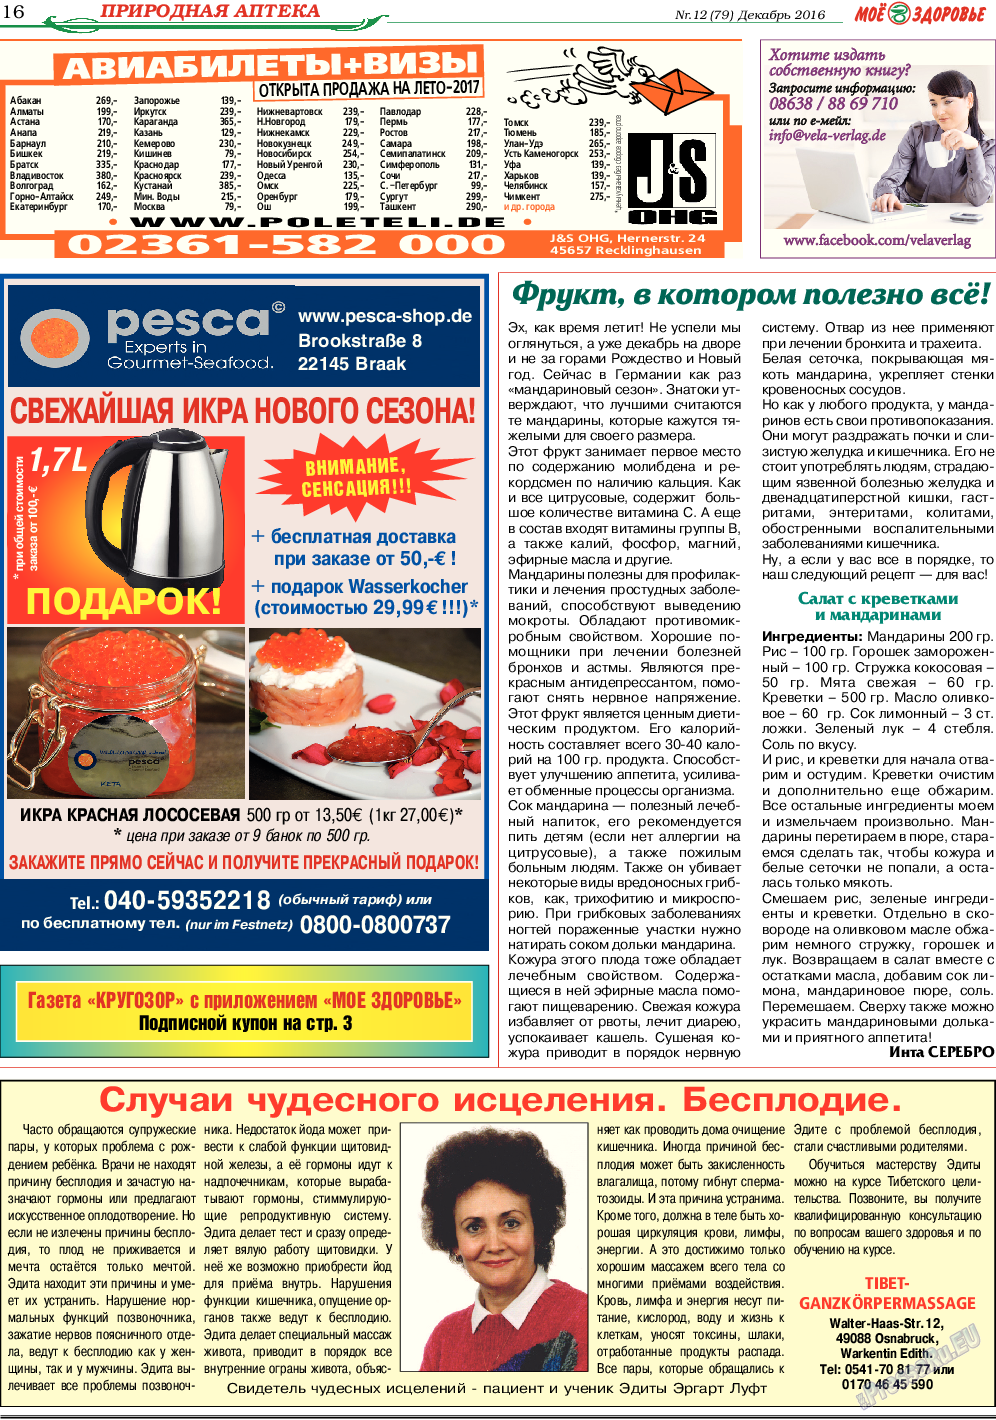 Кругозор, газета. 2016 №12 стр.16